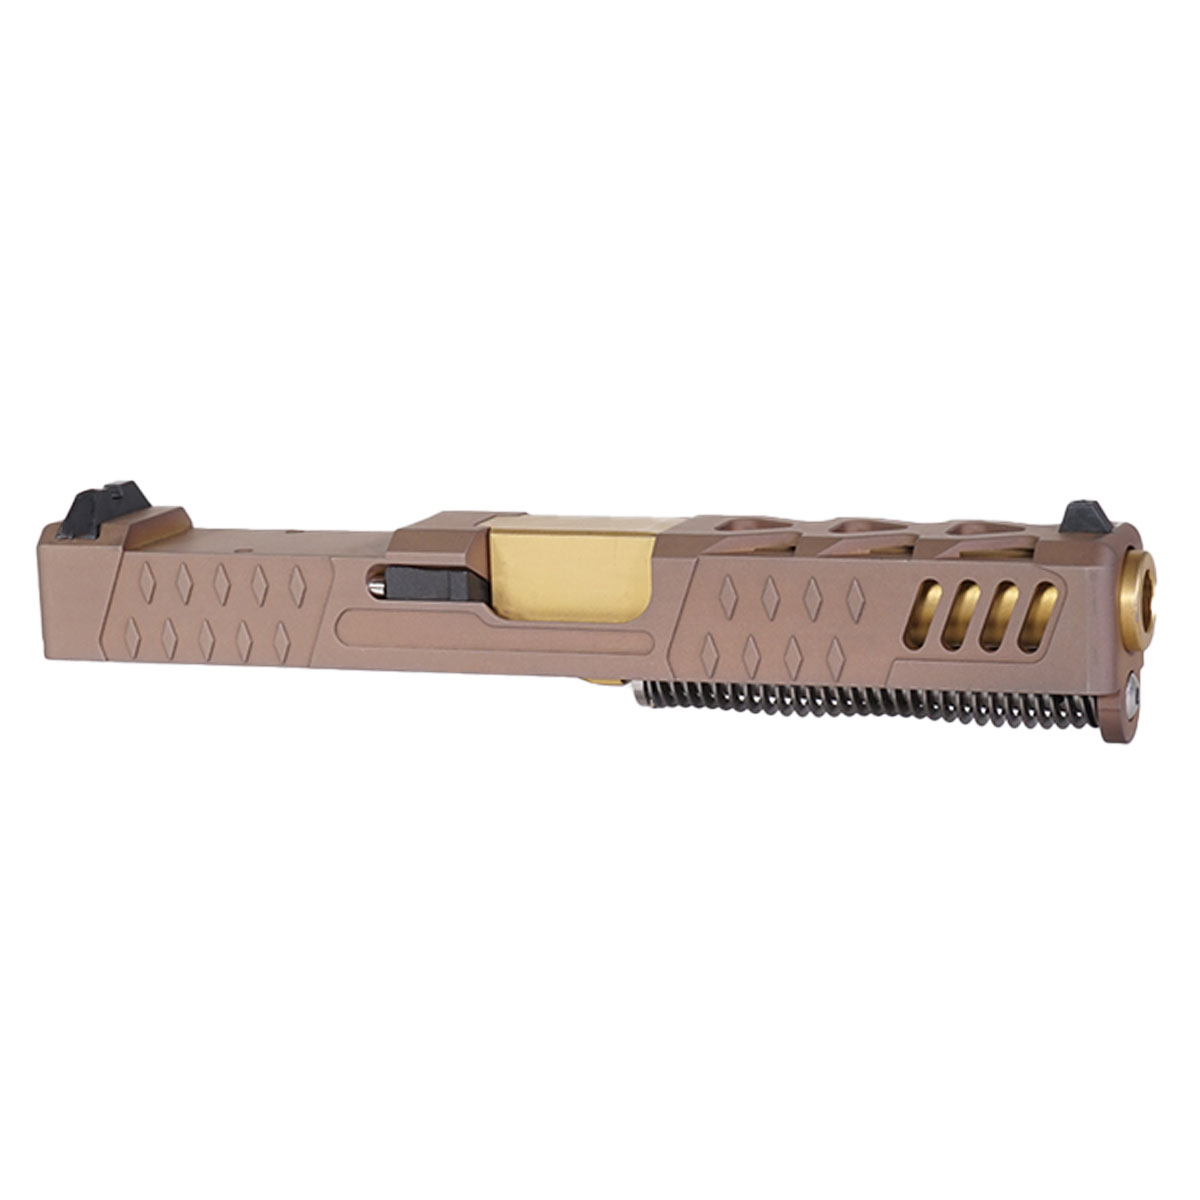 DTT 'Harbringer' 9mm Complete Slide Kit - Glock 19 Gen 1-3 Compatible